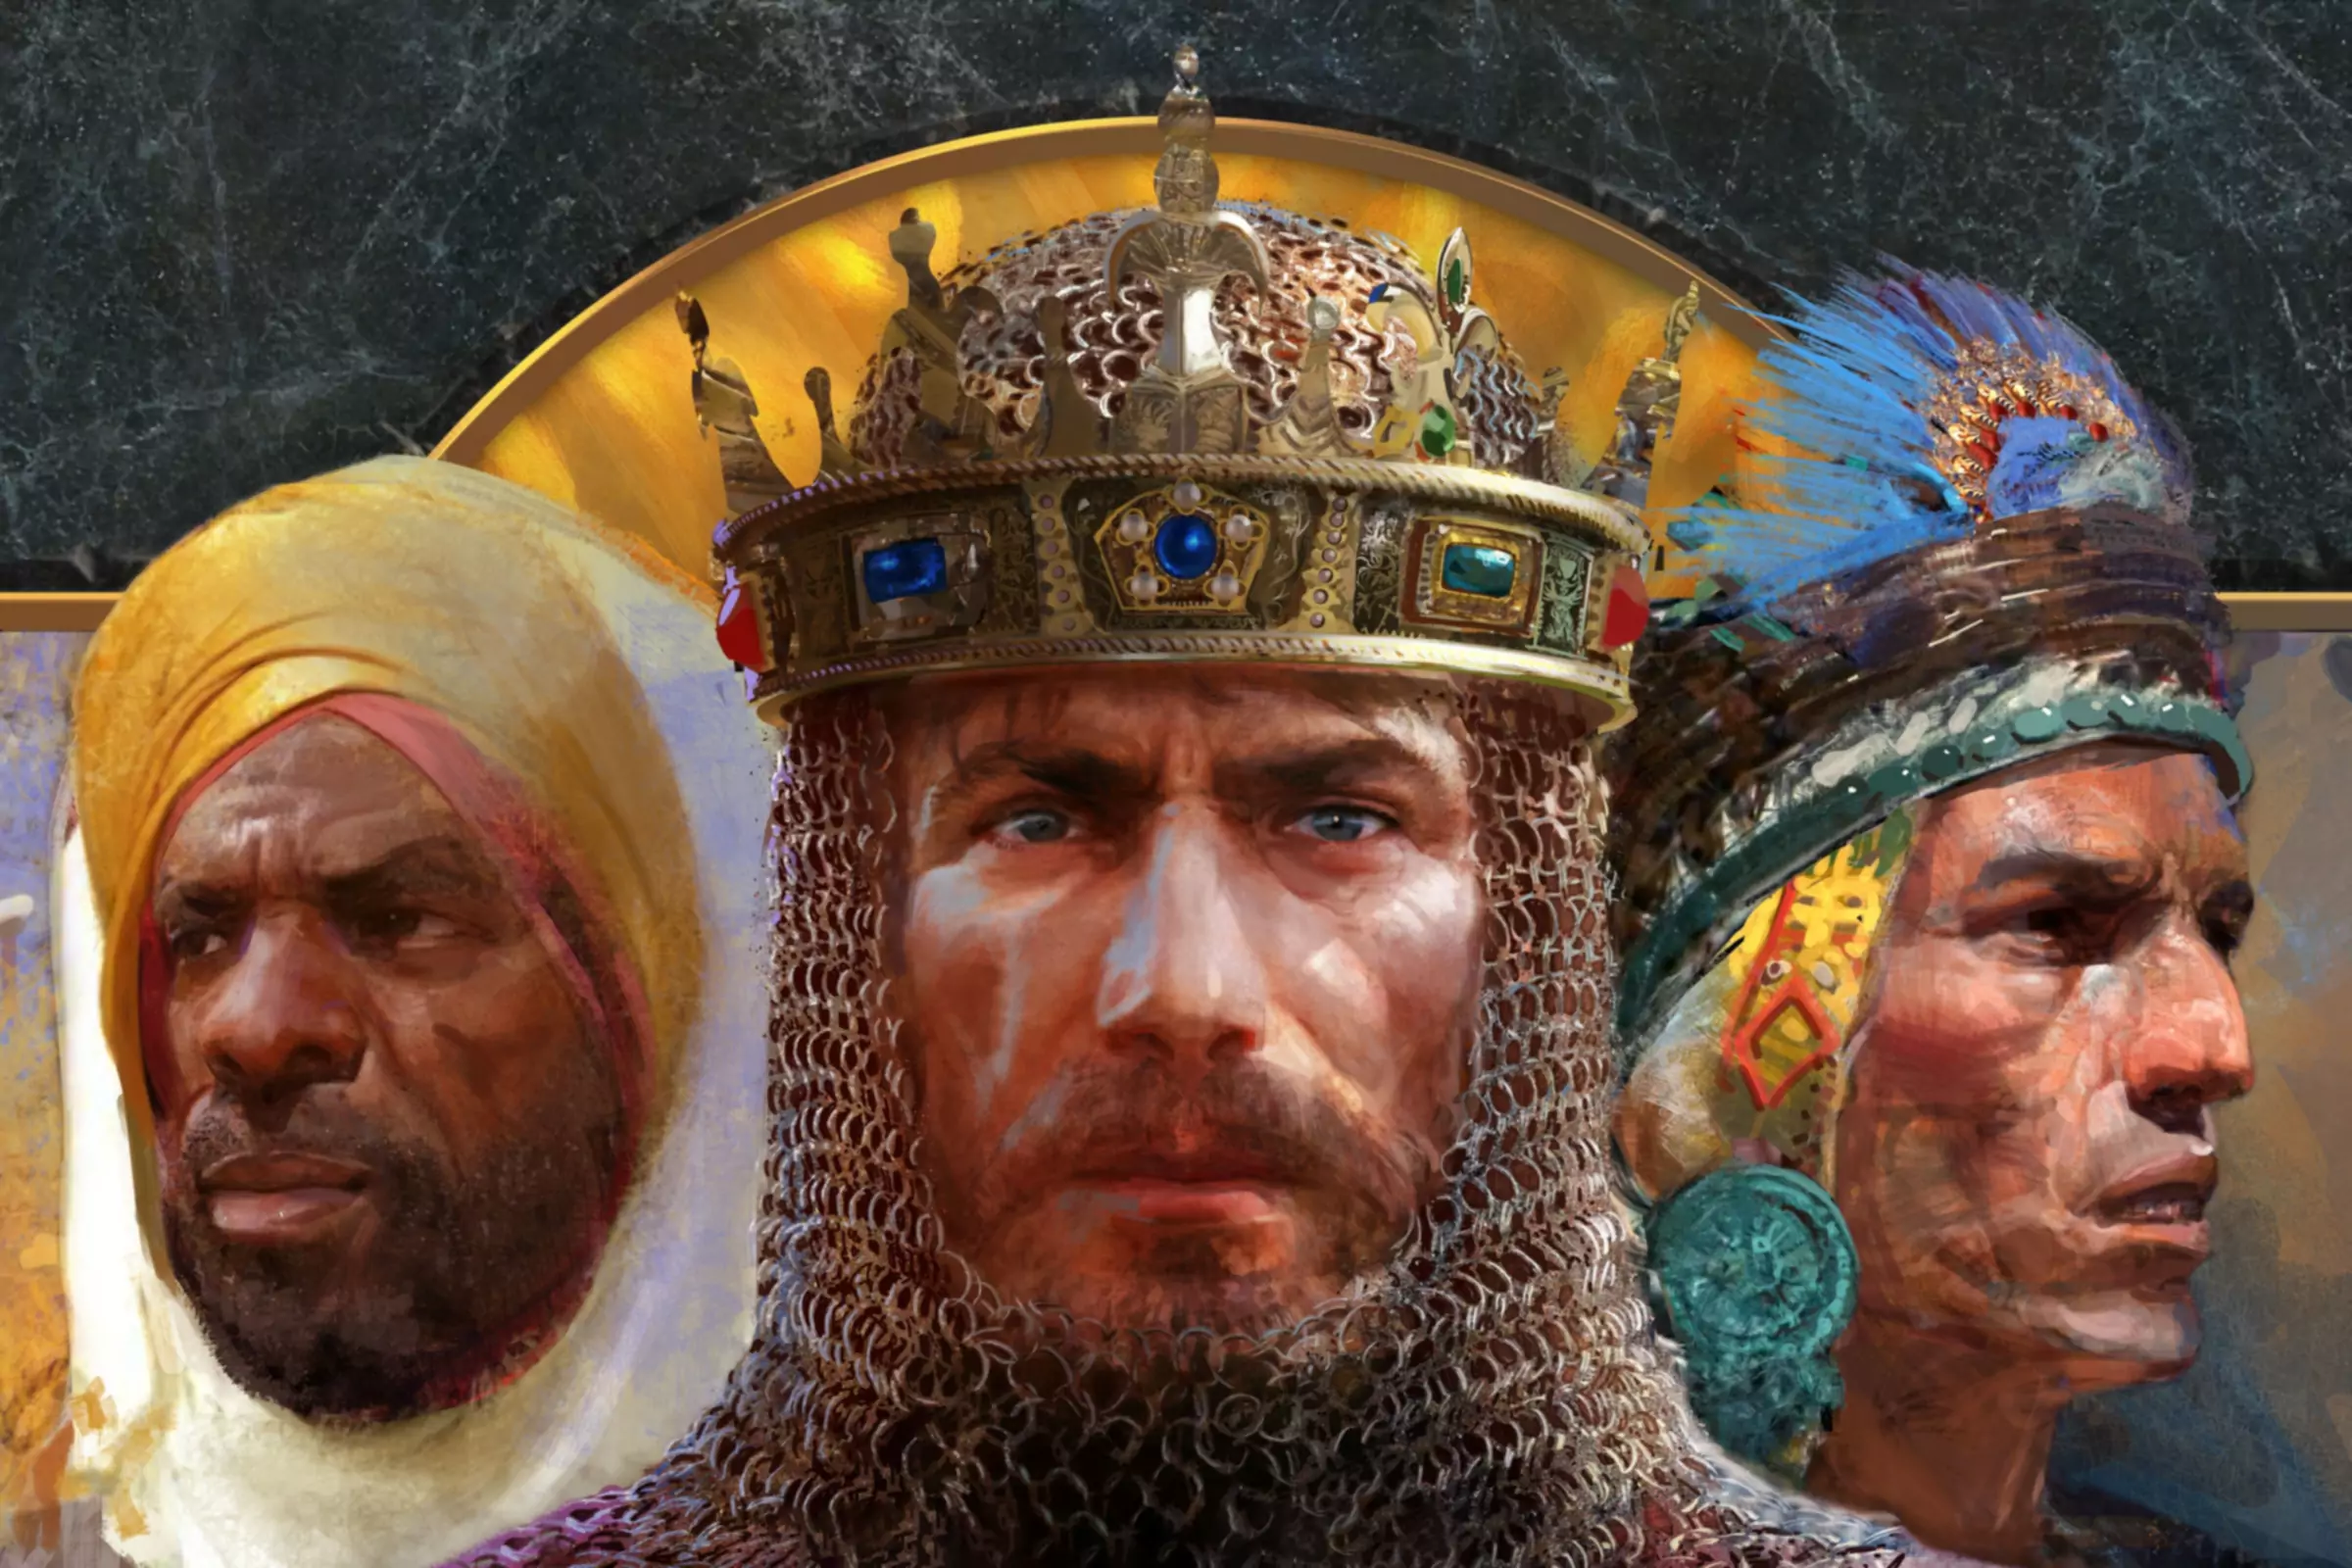 Naslovnica igre Age of Empires II z zgodovinskimi liki.